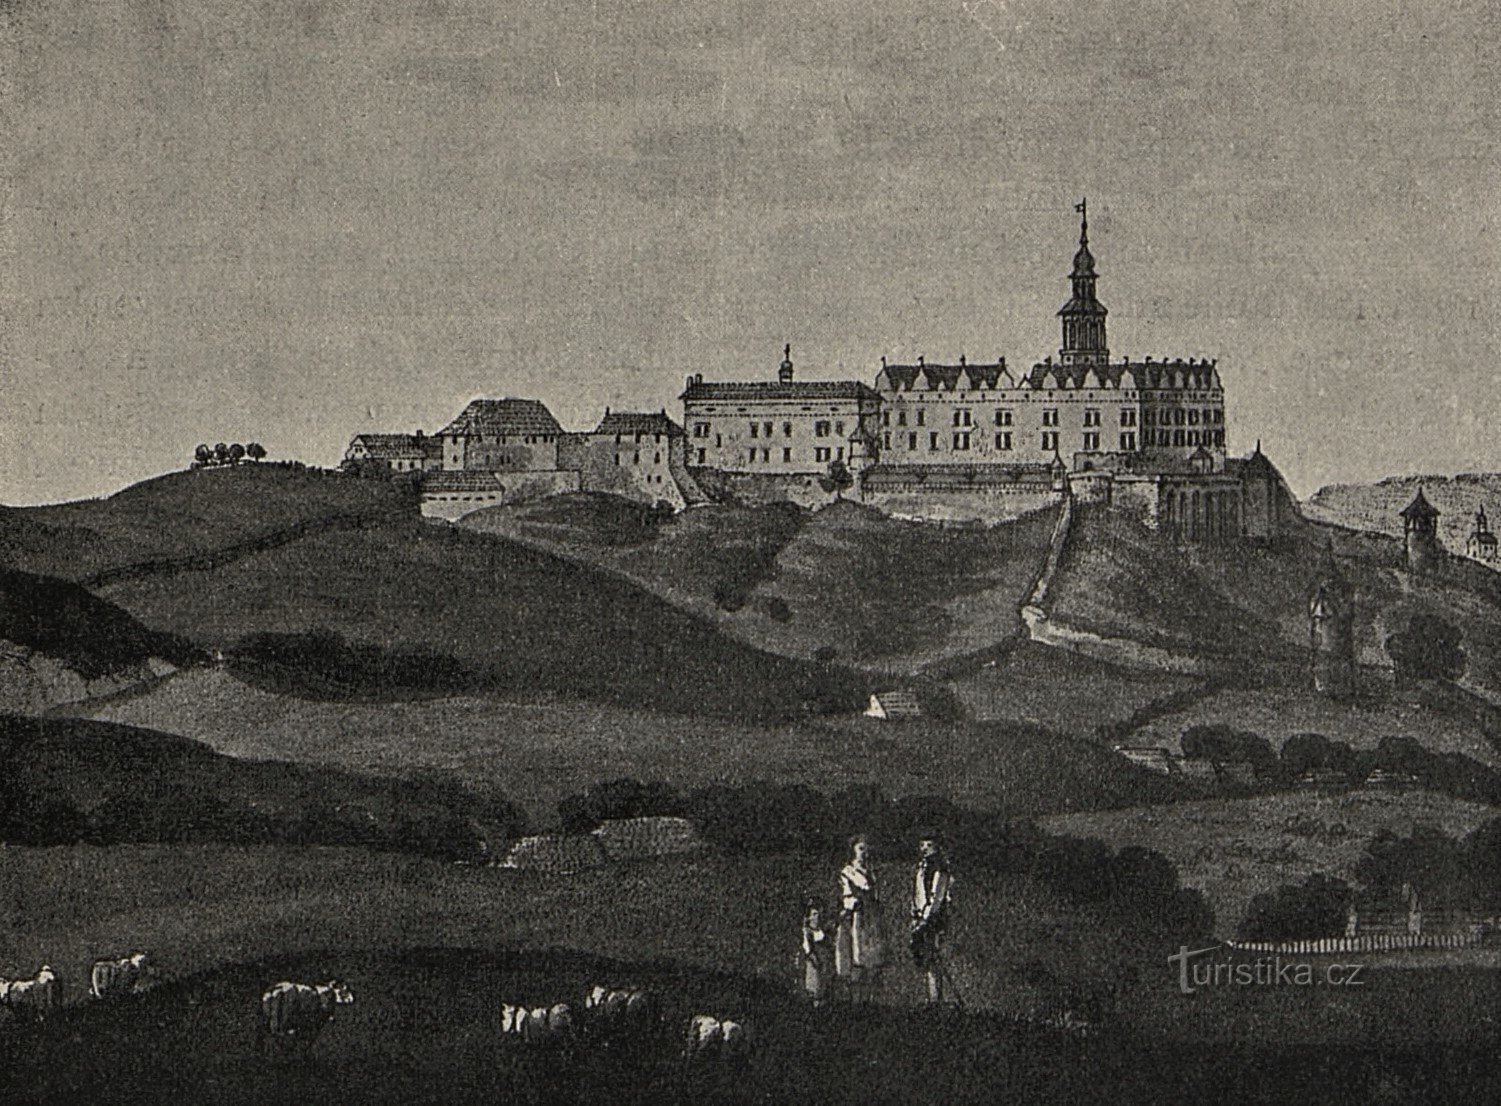 Pogled na grad Náchod iz leta 1805 Johanna Venuta